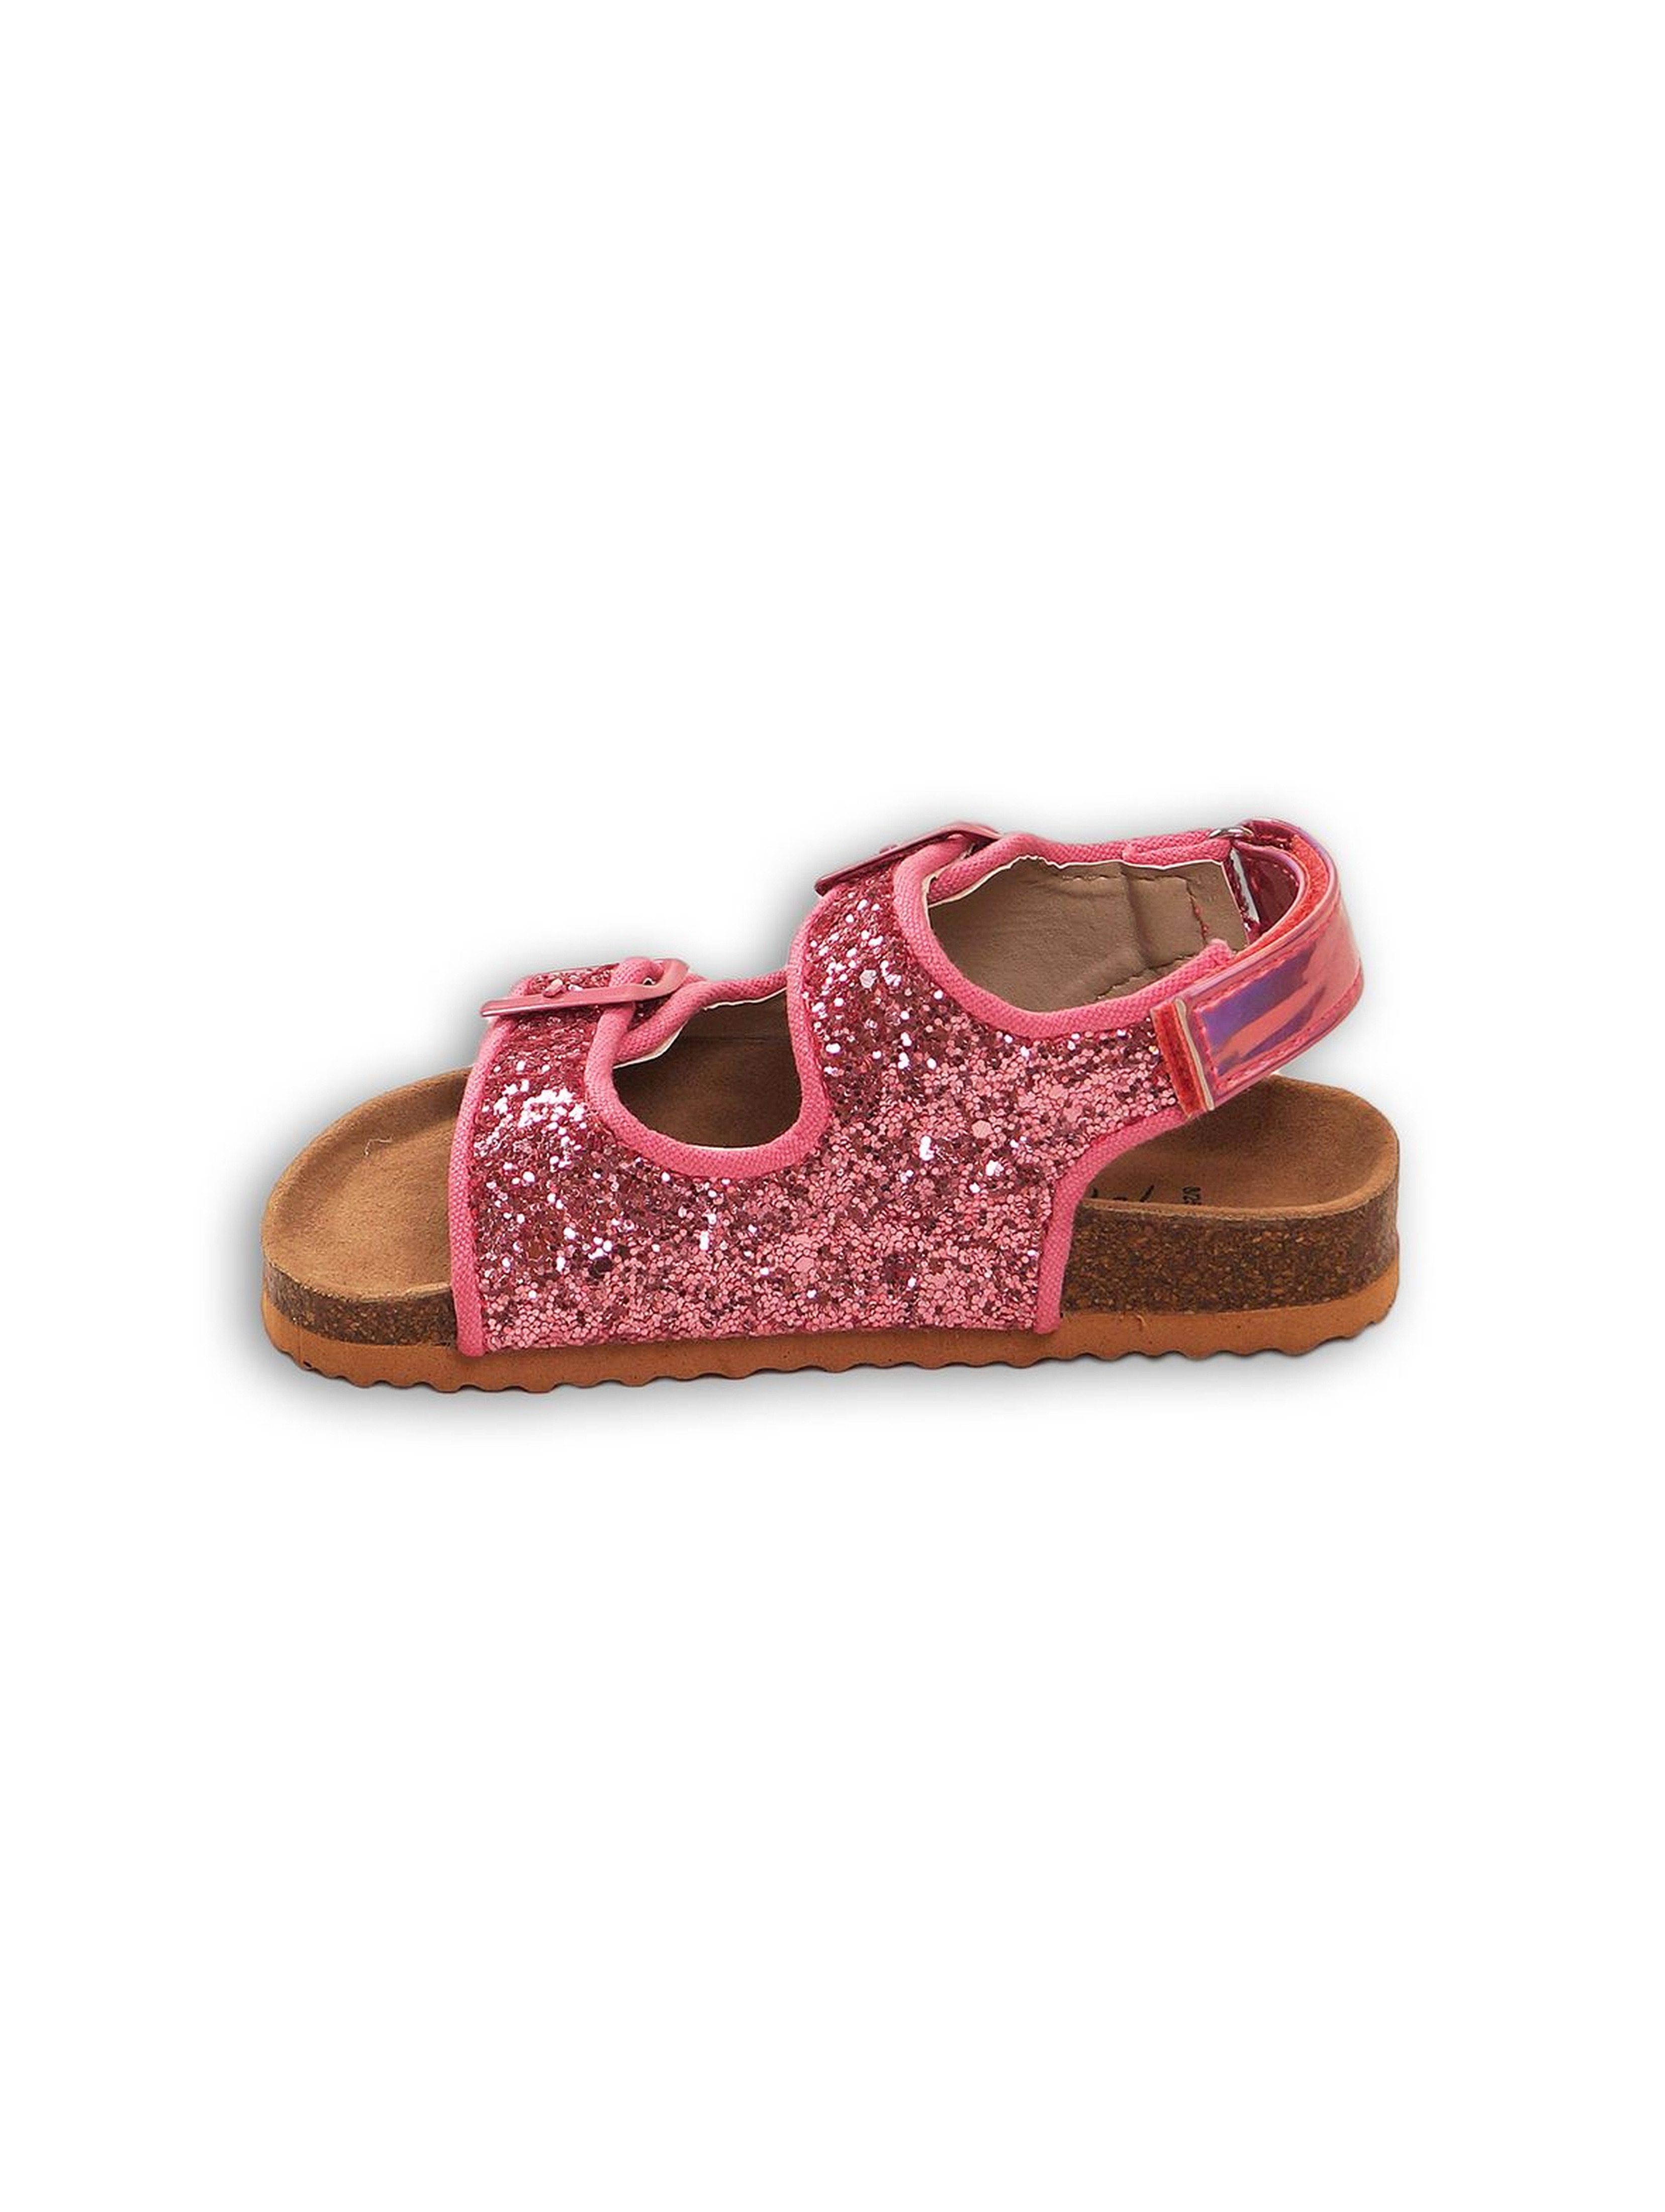 Sandały dla dziewczynki- różowe brokatowe